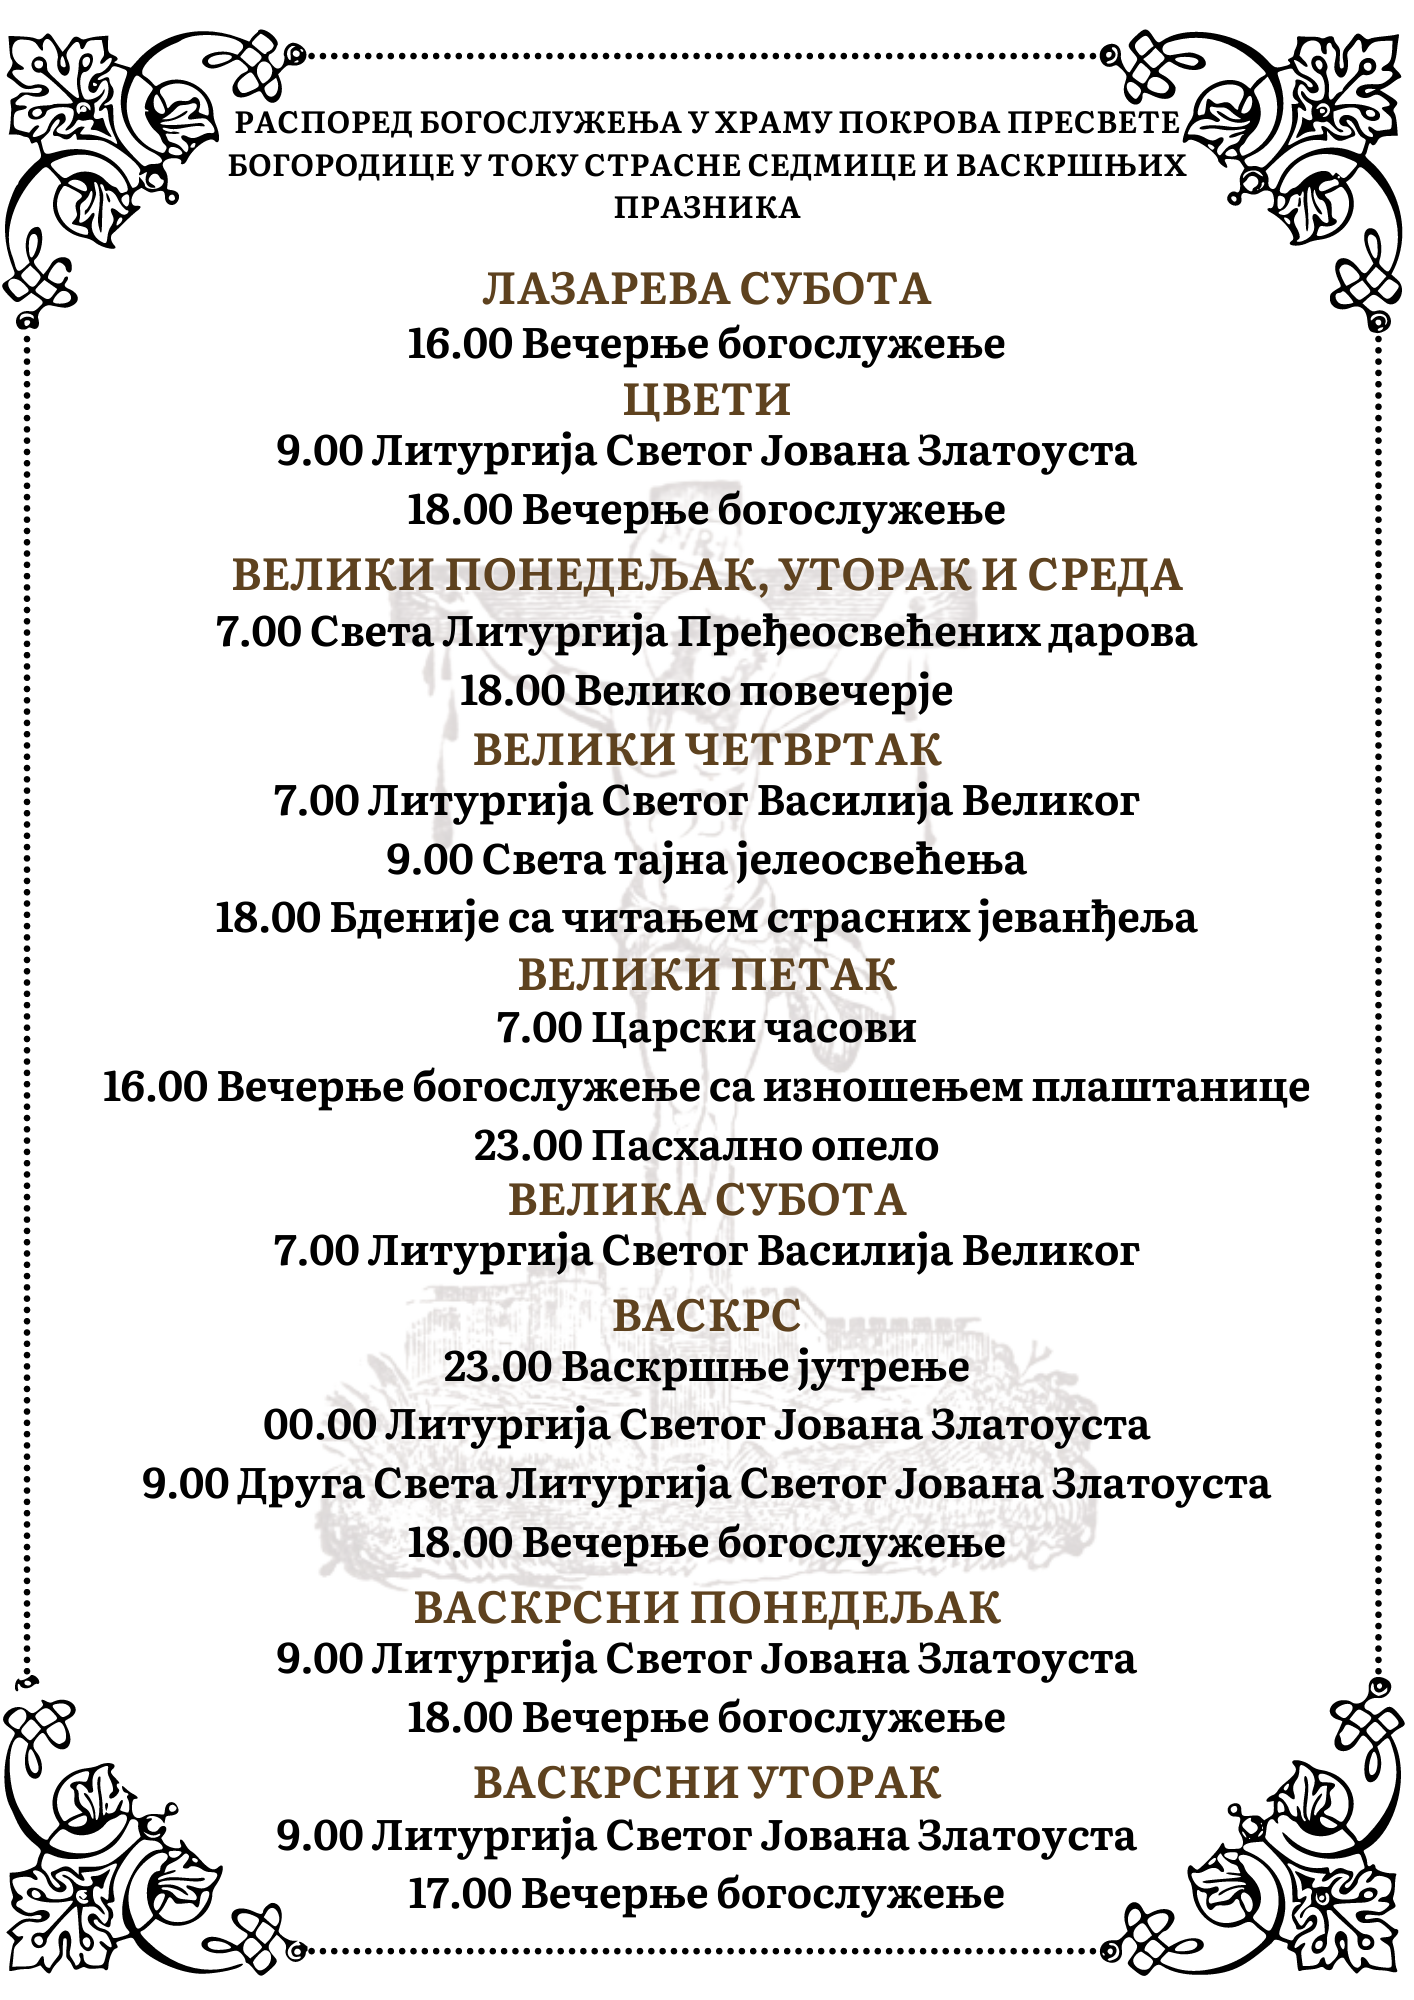 Распоред богослужења у Храму Покрова Пресвете Богородице у току Страсне седмице и Васкршњих празника